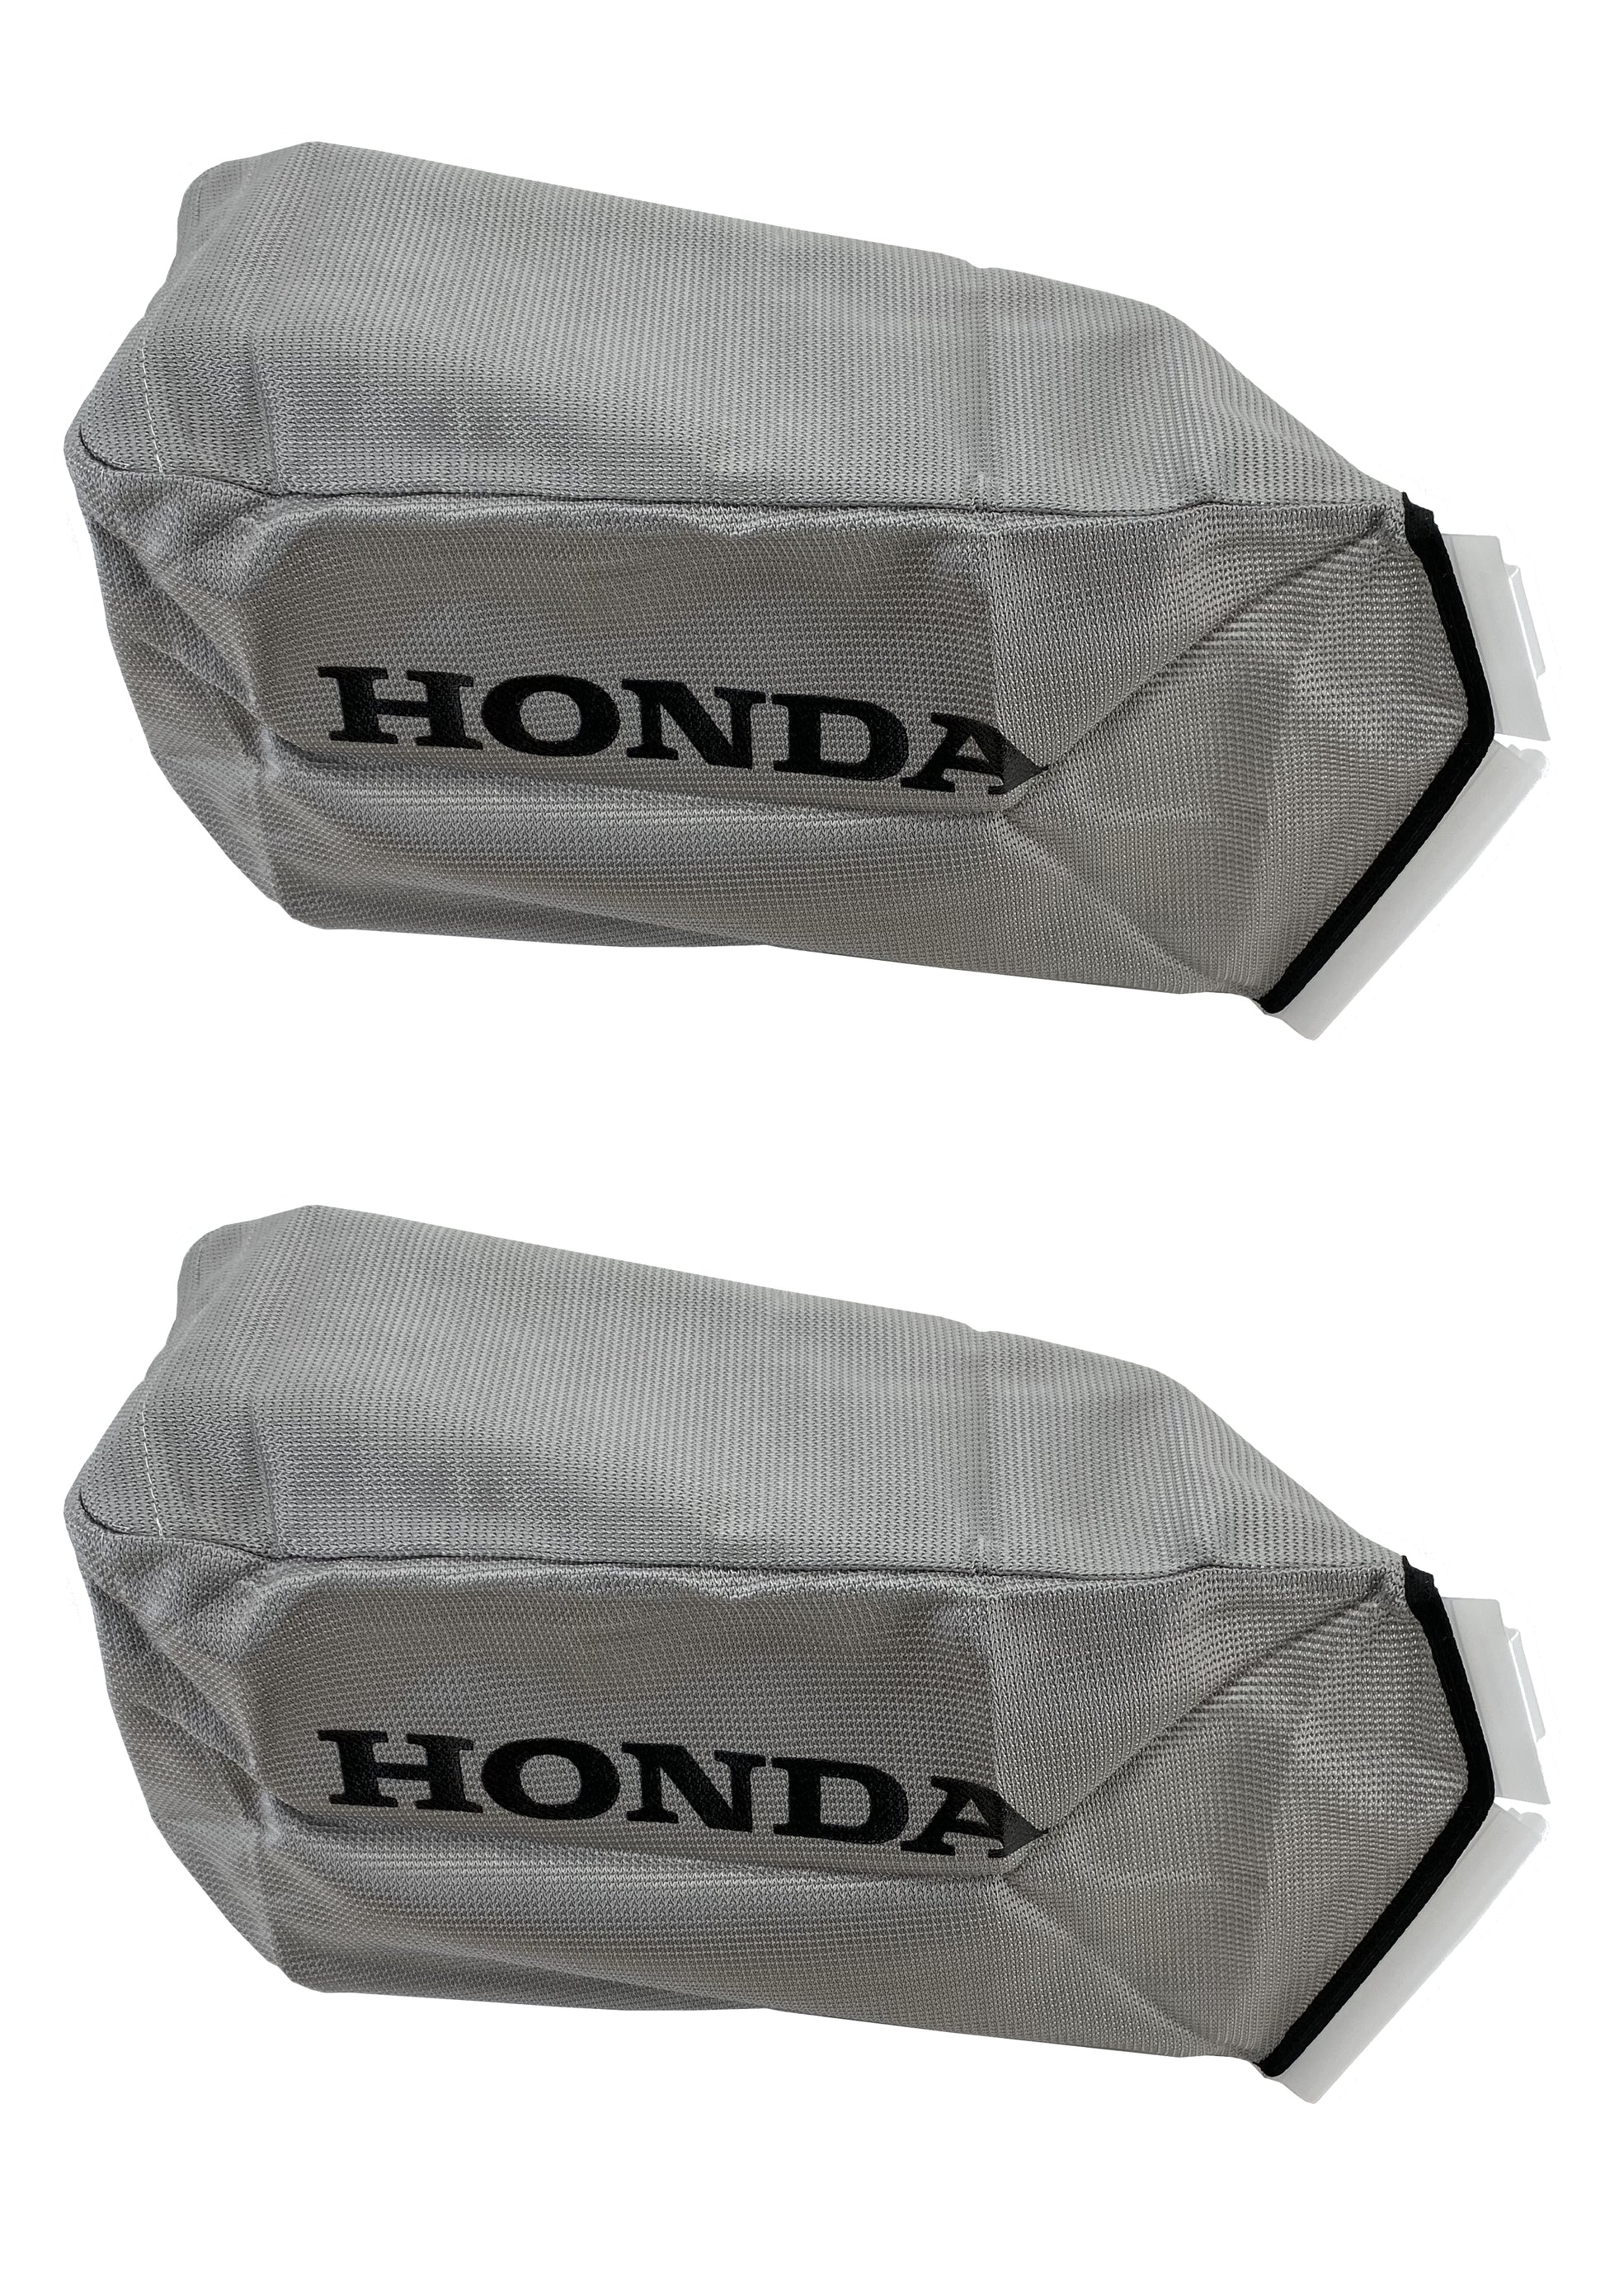 Honda Original Equipment Grass Bag Fabric 2 Pack 813 Vh7 D00 Agnlawn Com